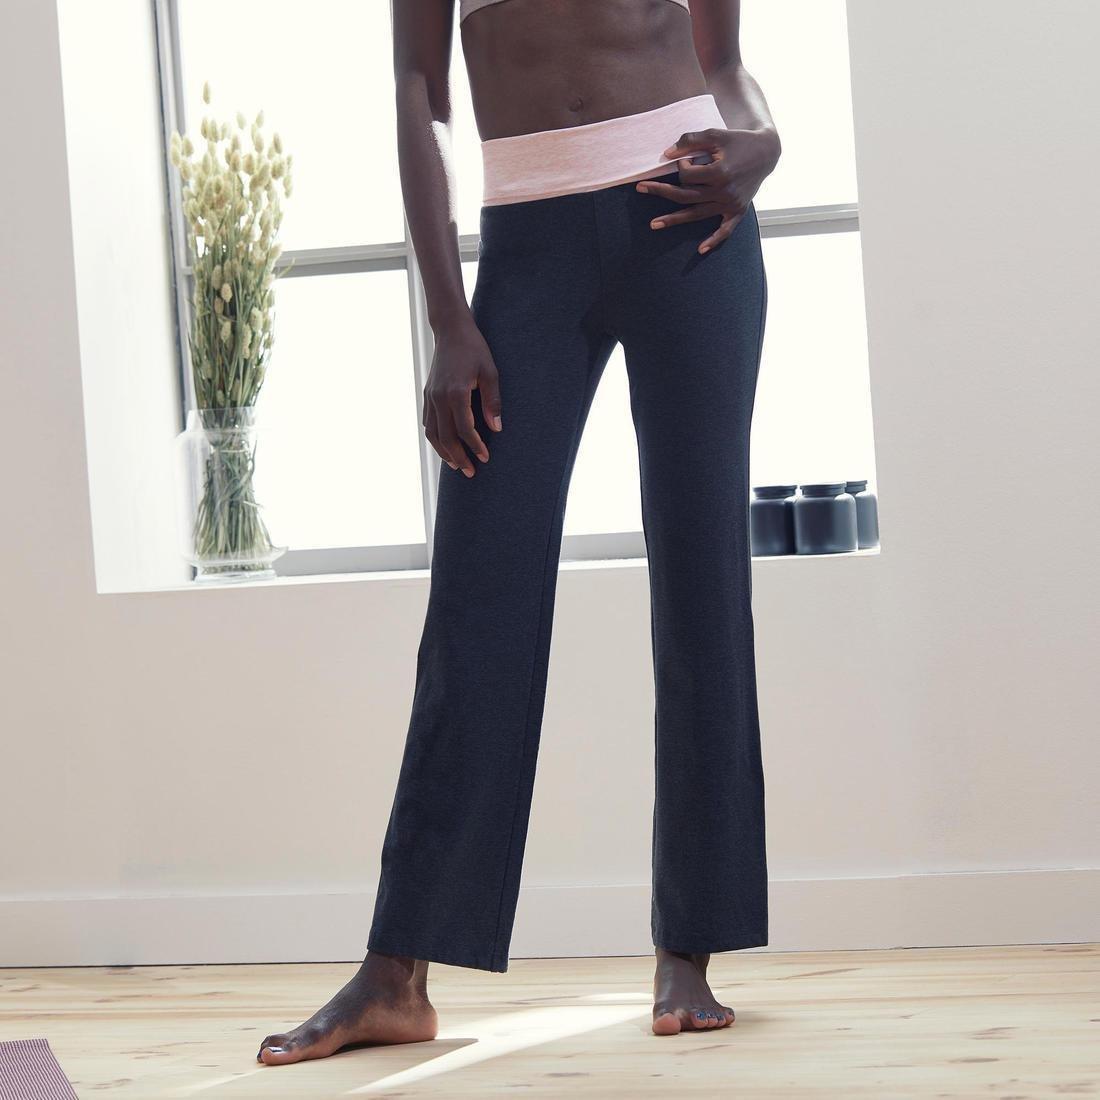 KIMJALY - Womens Eco-Designed Gentle Yoga Bottoms, Black